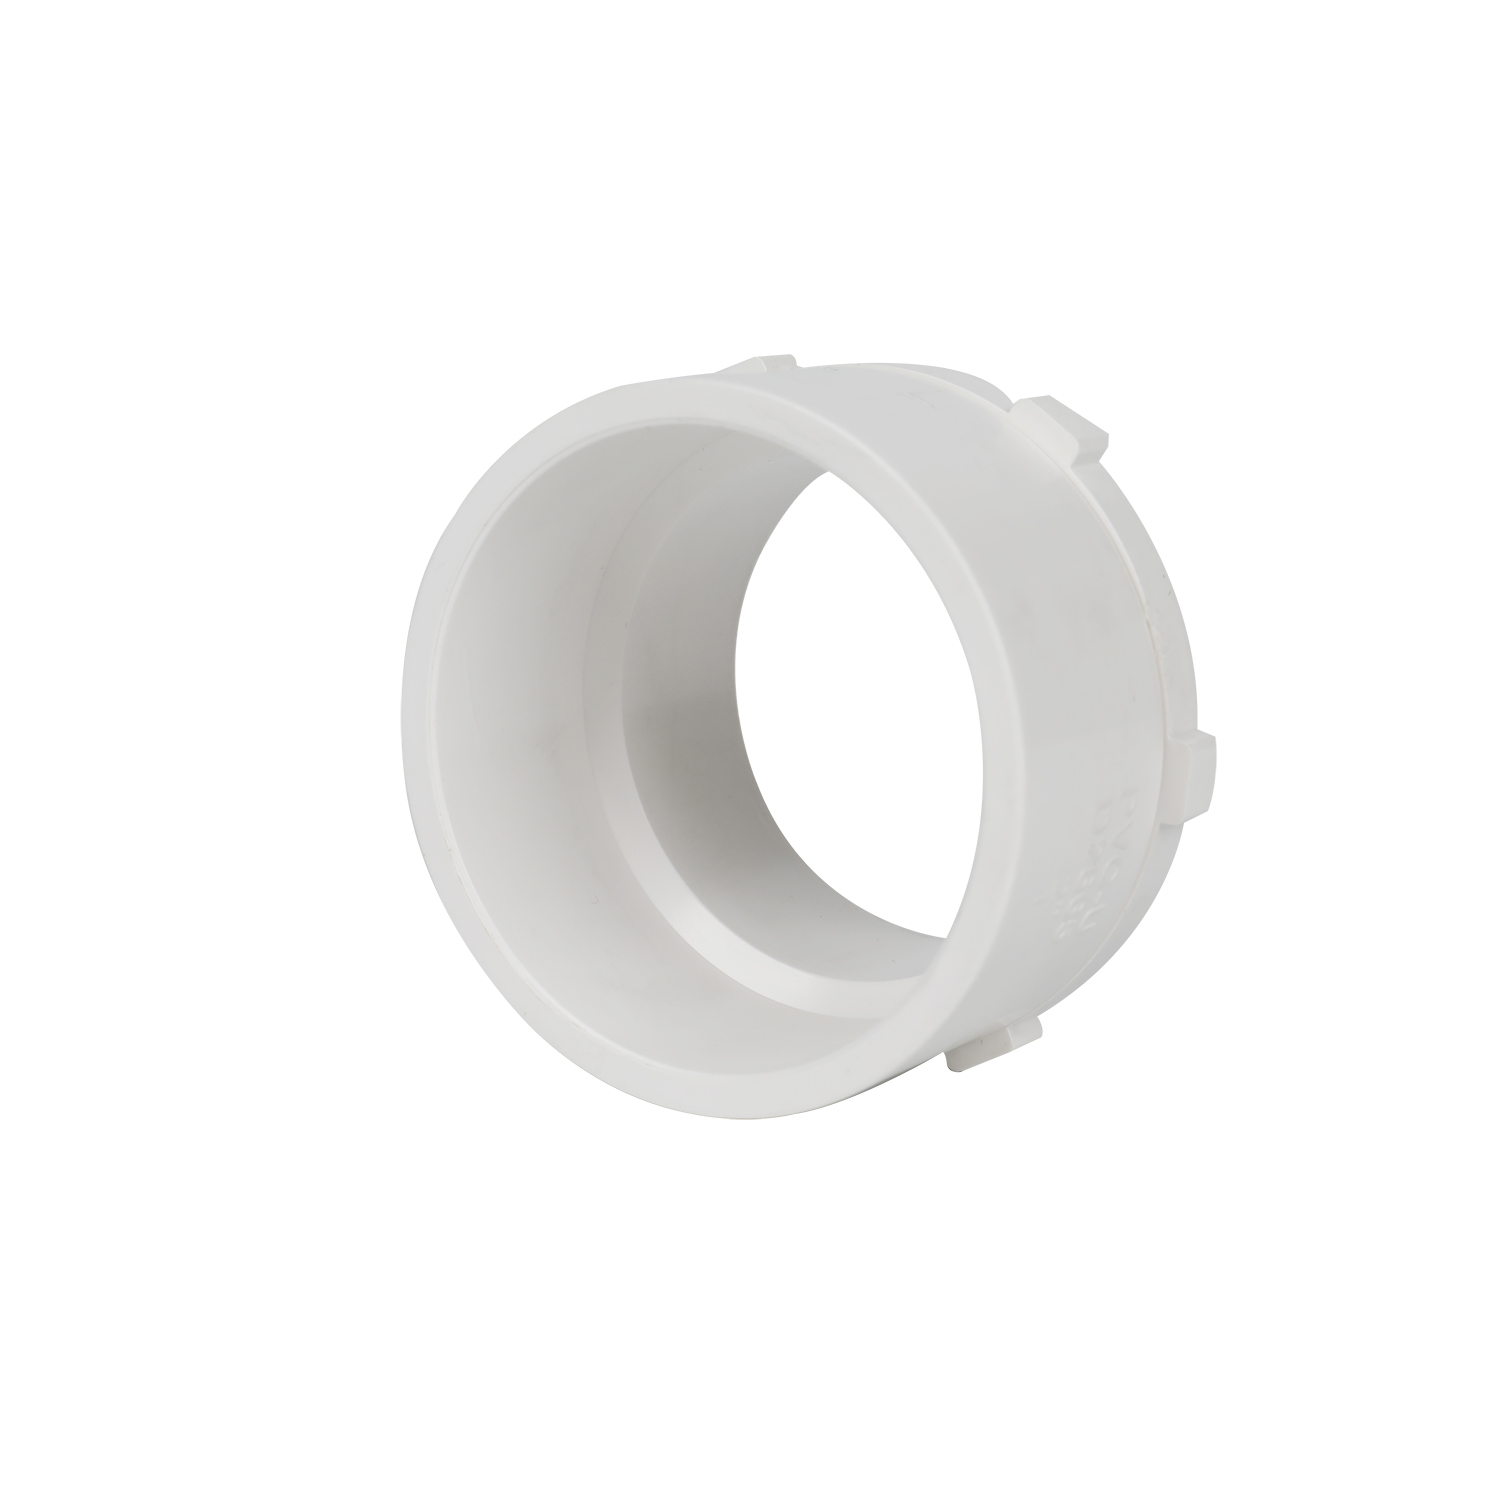 Fábrica al por mayor de alta calidad PVC tubo de plumbar accesorios Fabricantes de plástico 2 PVC Tubo de agua adaptador masculino